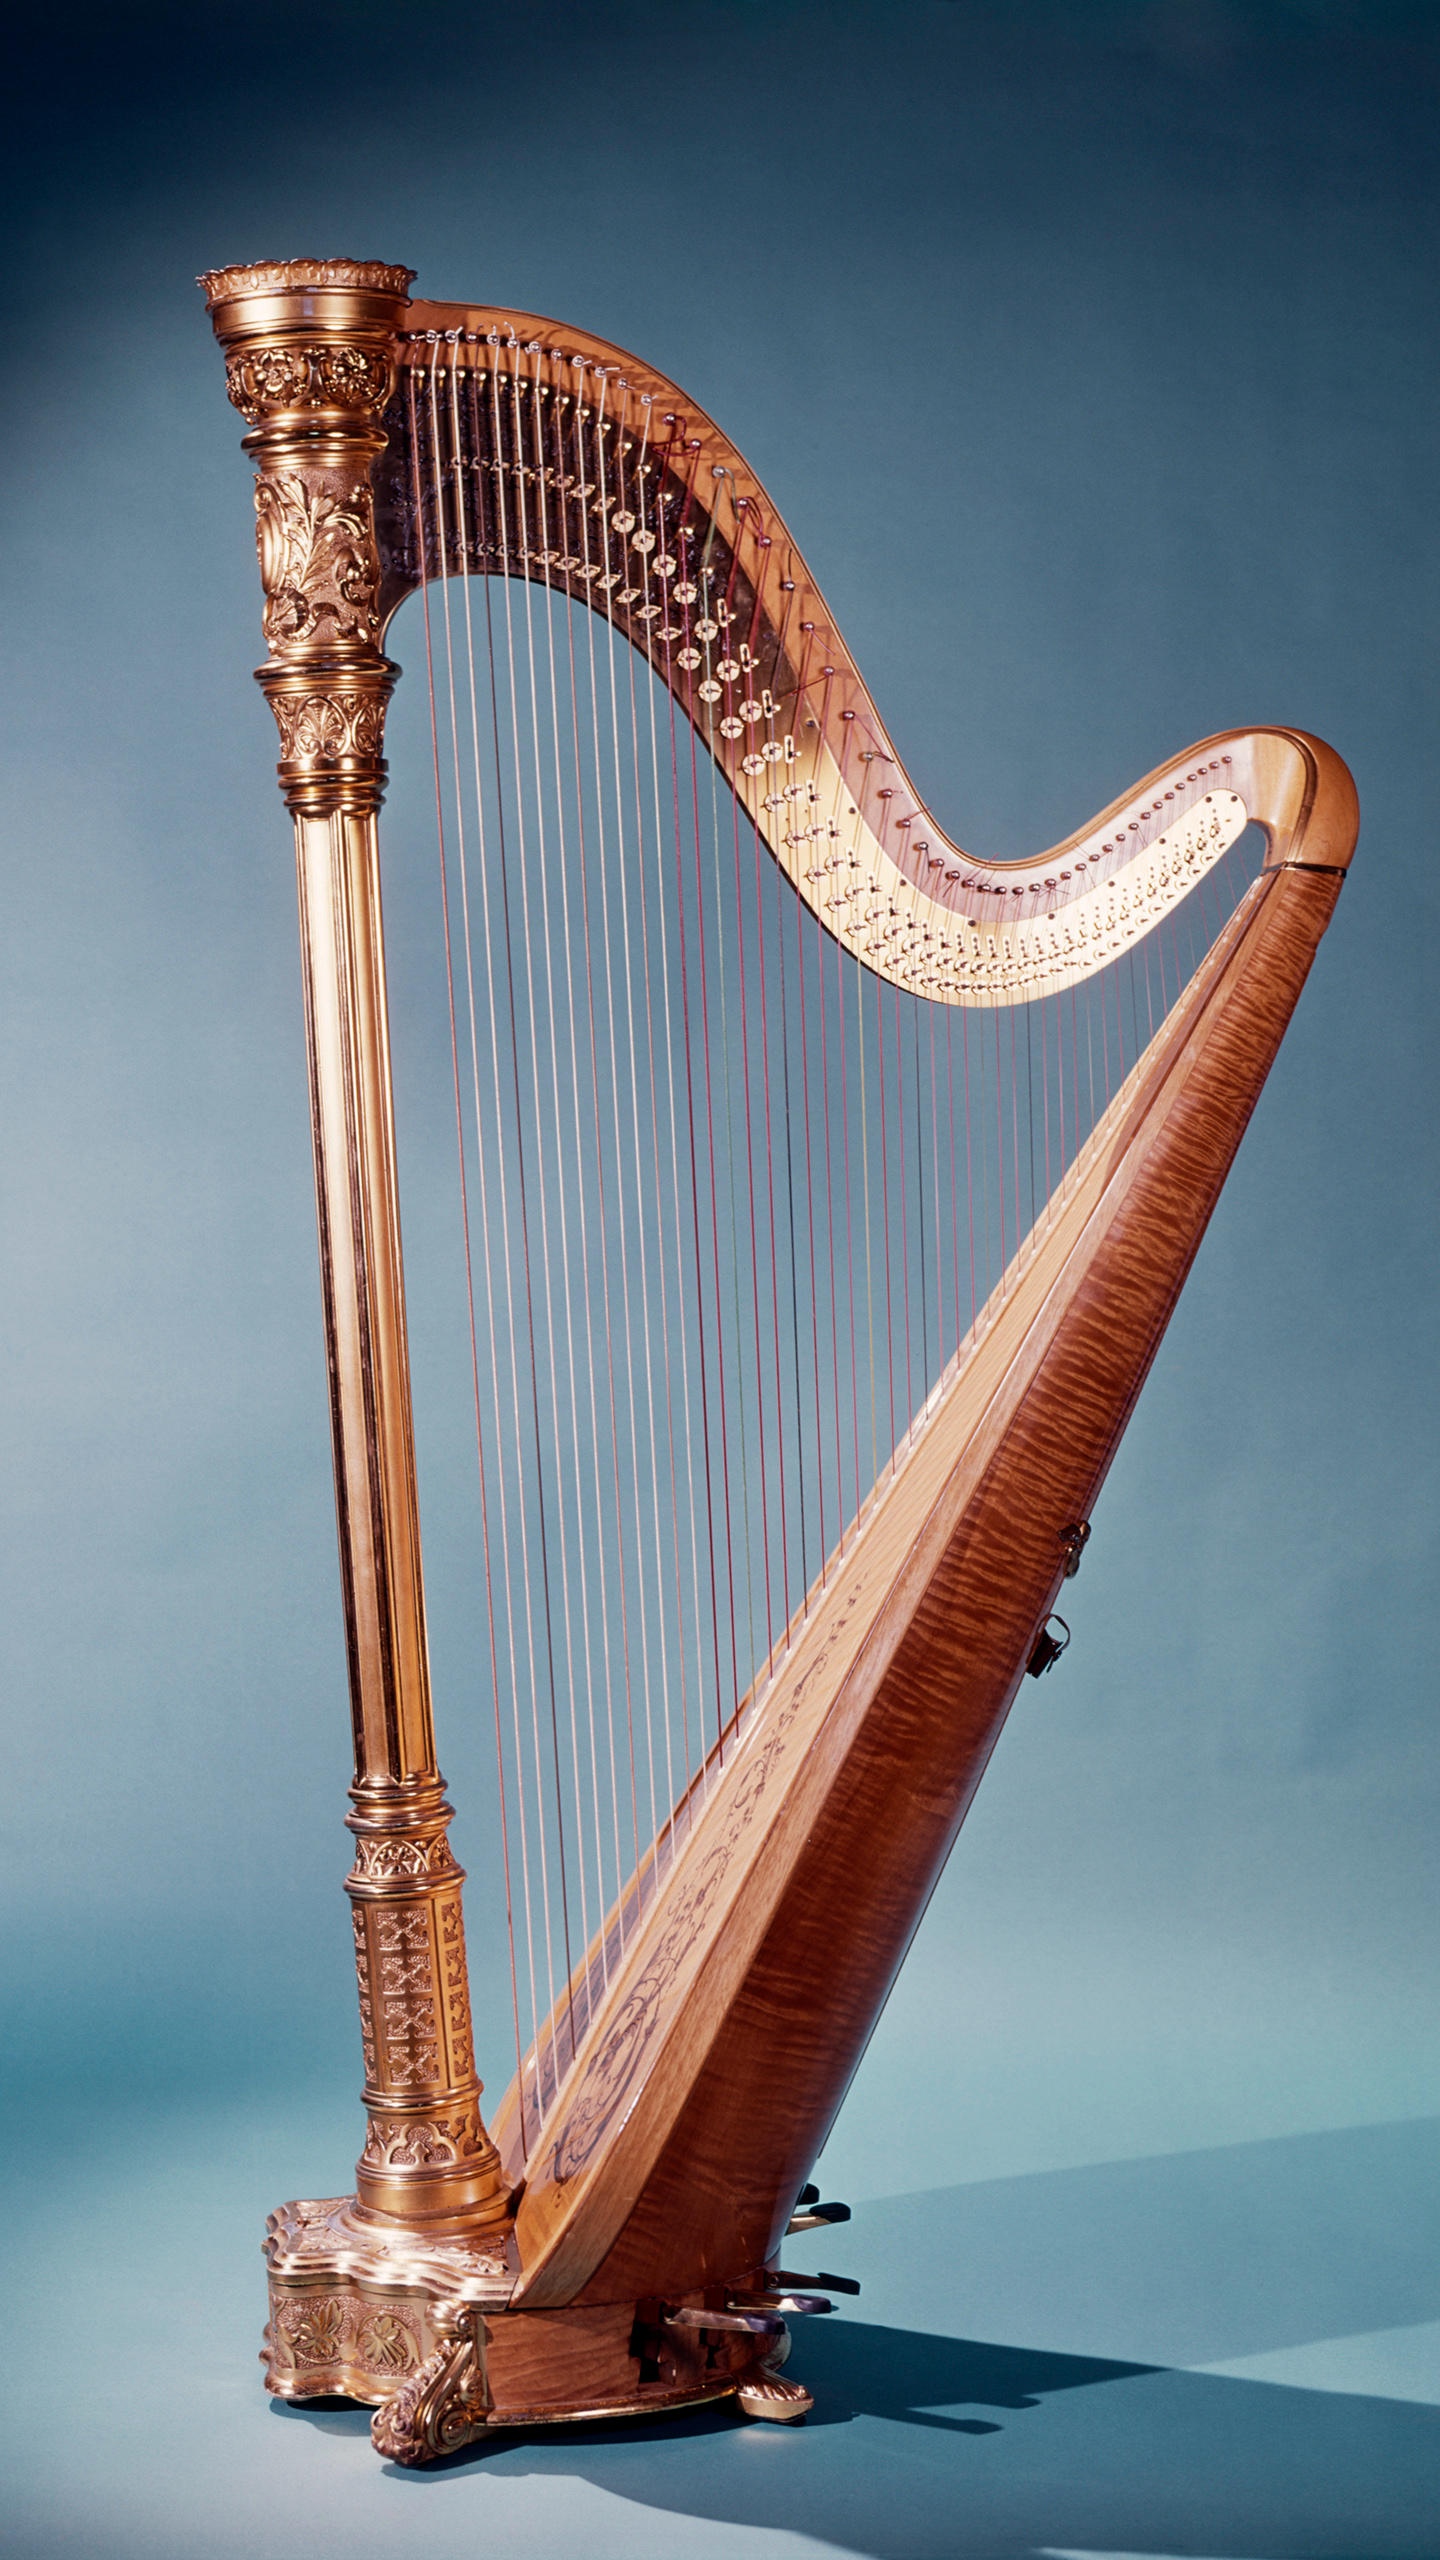 竖琴是世界上最古老的拨弦乐器之一